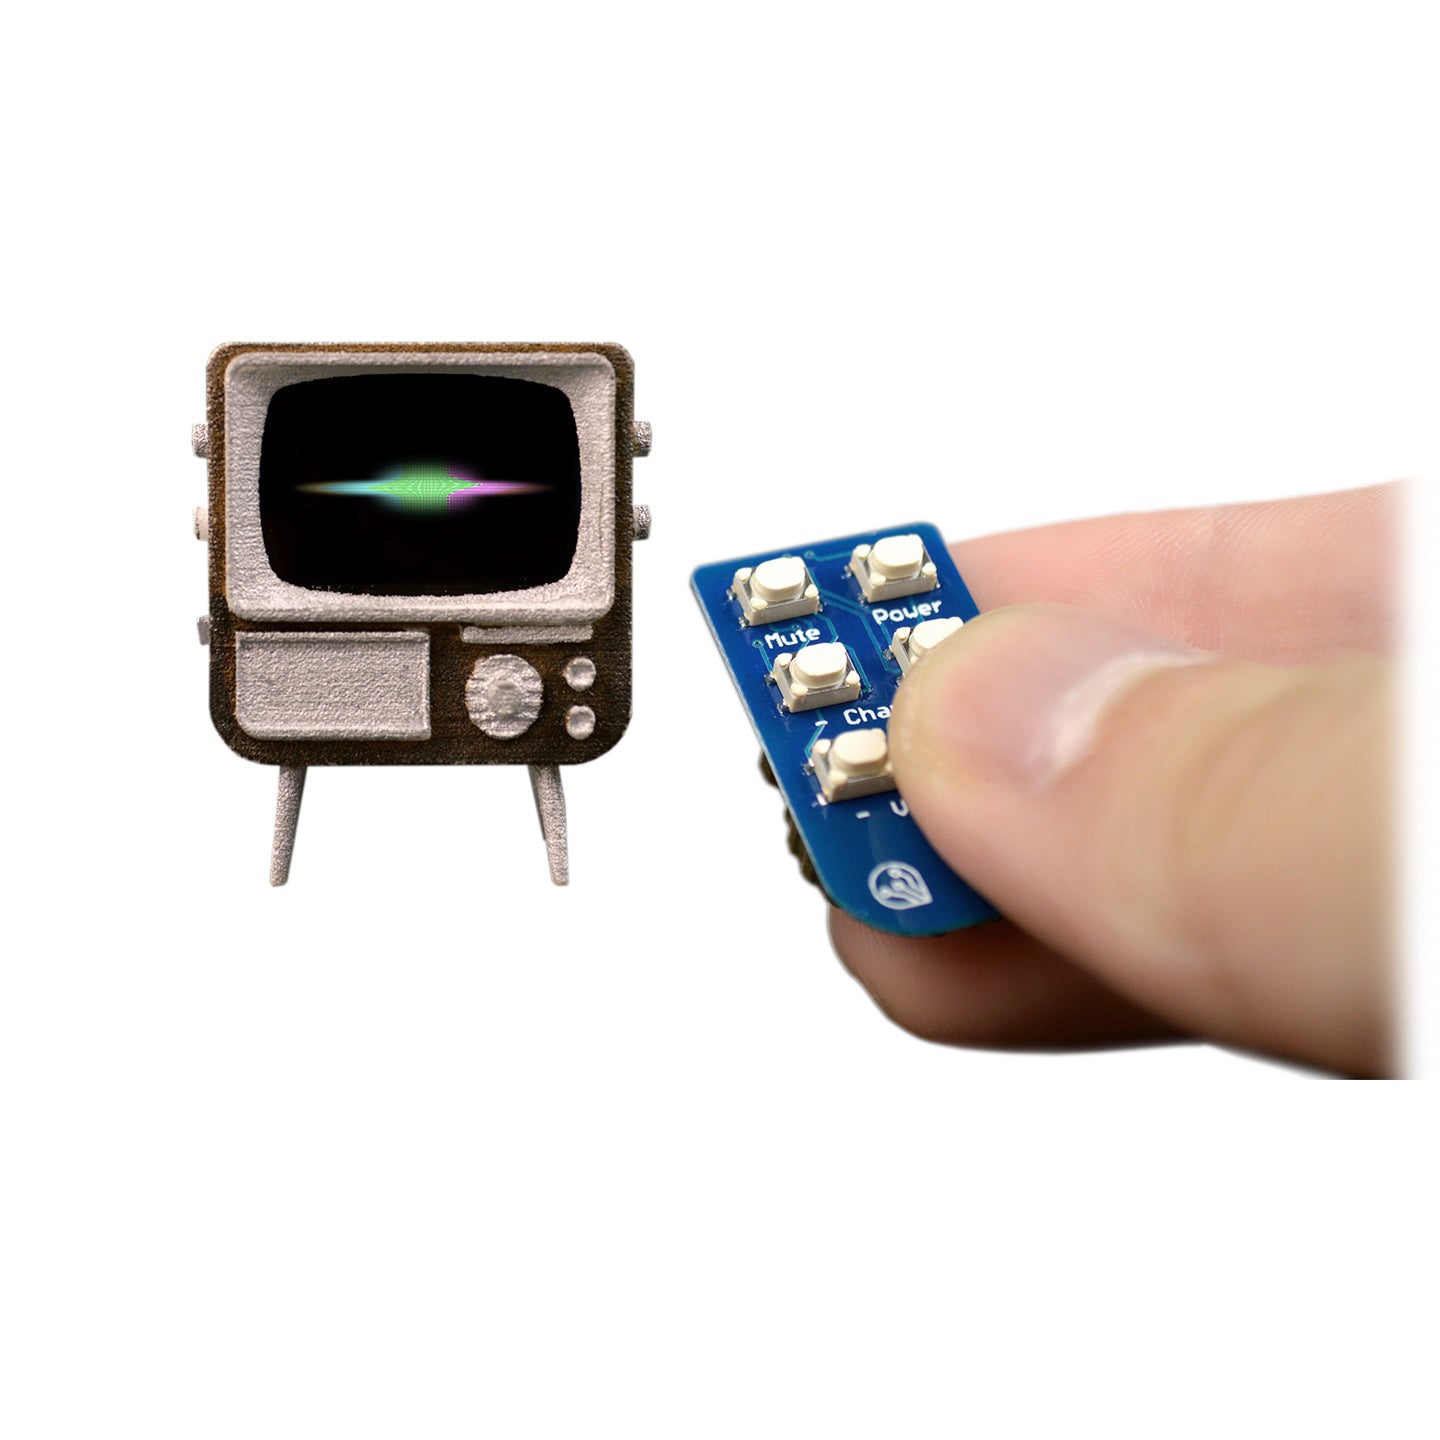 Tiny TV DIY KIT By Tiny Circuits